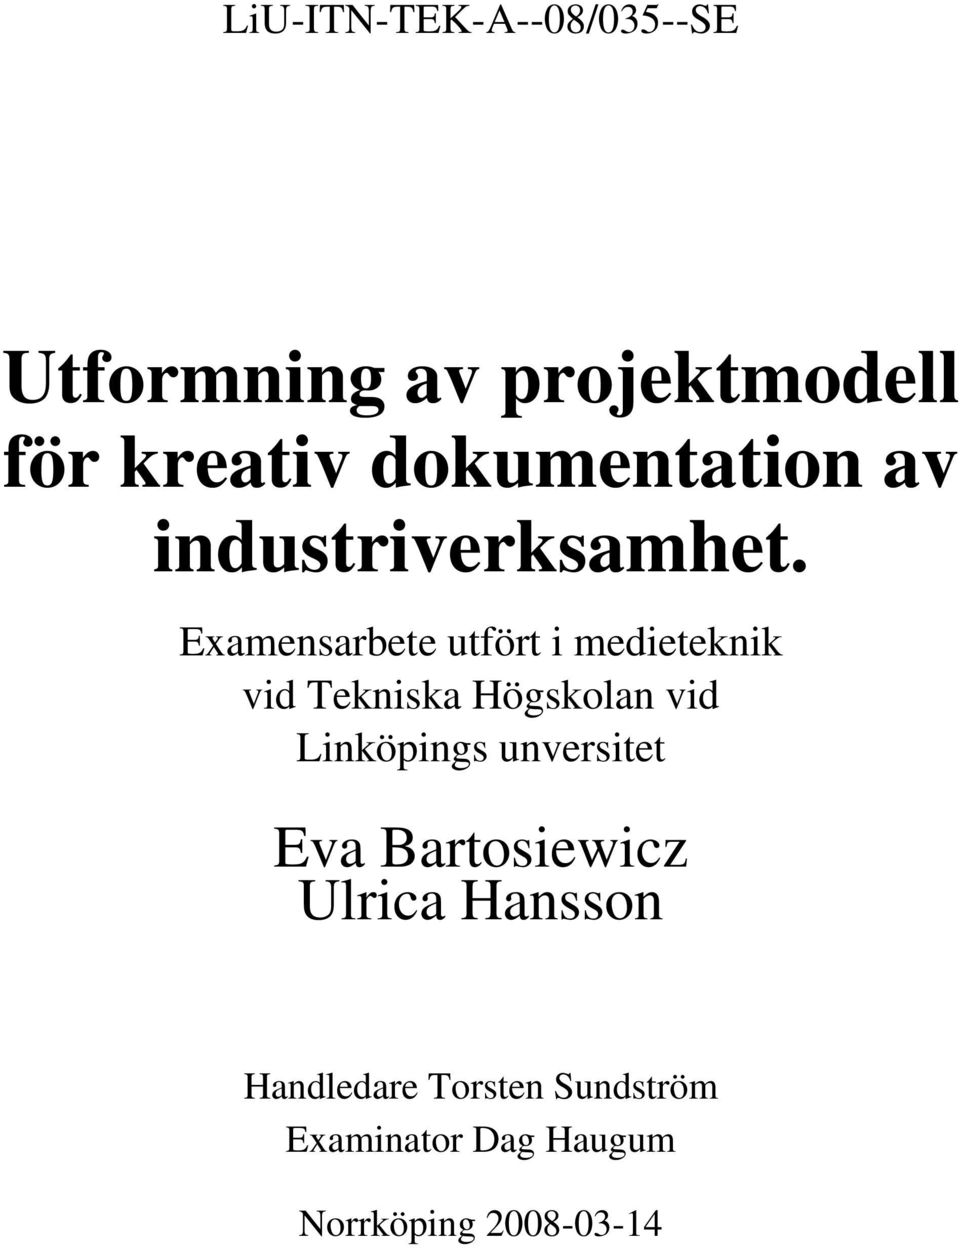 Examensarbete utfört i medieteknik vid Tekniska Högskolan vid Linköpings